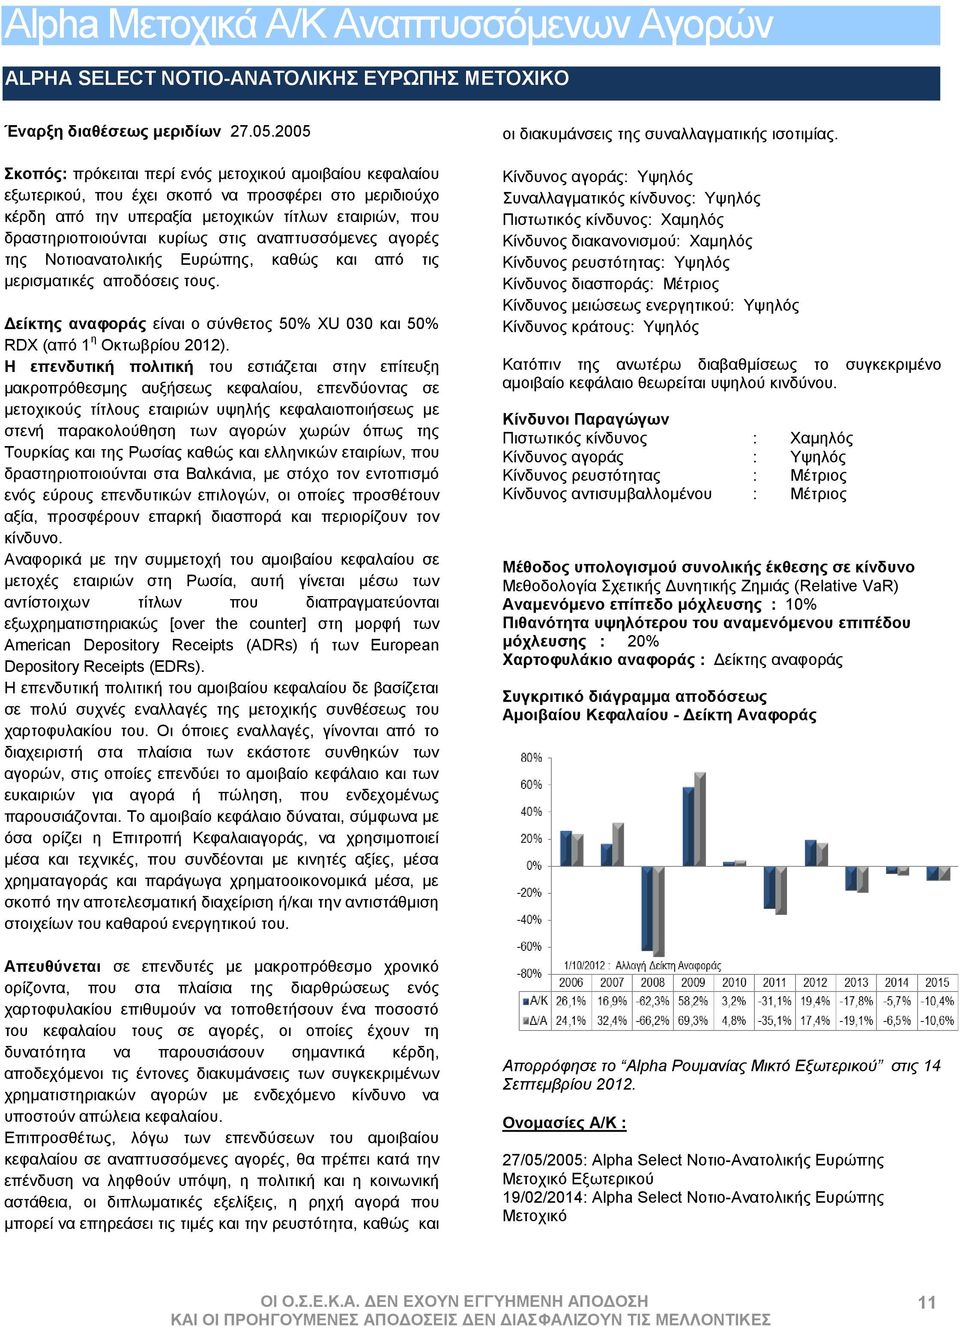 στις αναπτυσσόμενες αγορές της Νοτιοανατολικής Ευρώπης, καθώς και από τις μερισματικές αποδόσεις τους. Δείκτης αναφοράς είναι ο σύνθετος 50% XU 030 και 50% RDX (από 1 η Οκτωβρίου 2012).